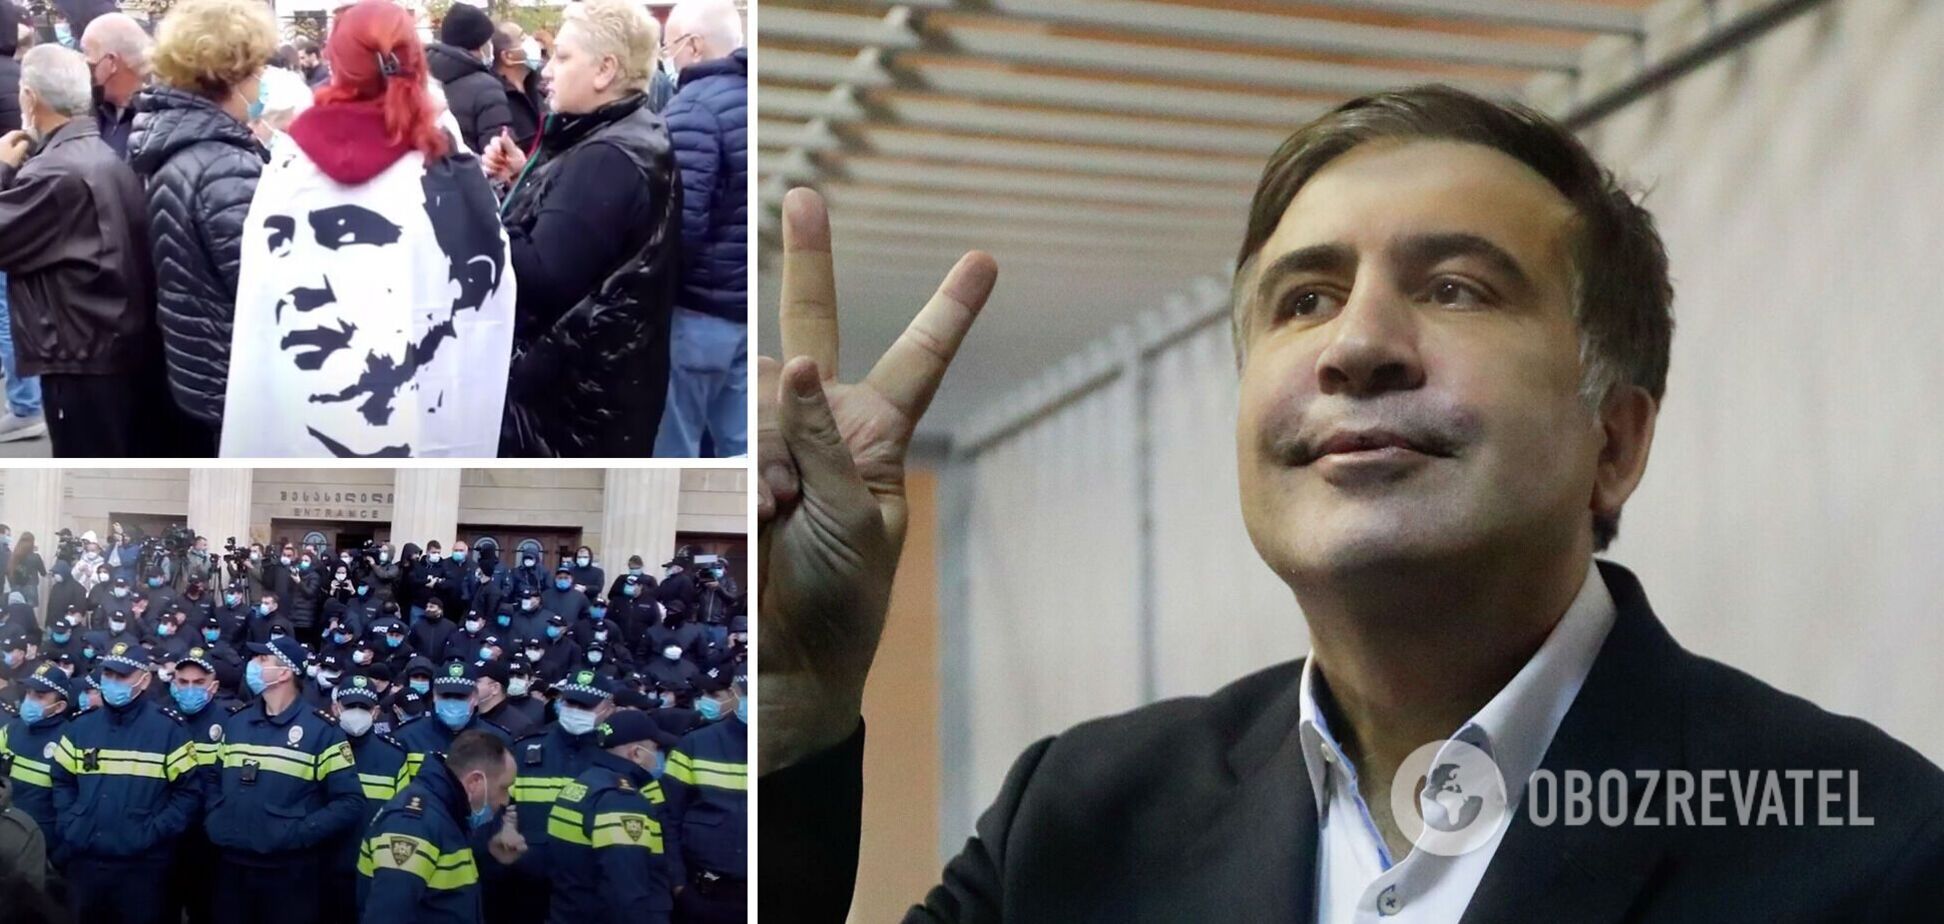 В Тбилиси начался суд над Саакашвили: сотни сторонников политика вышли на улицы, есть задержанные. Видео